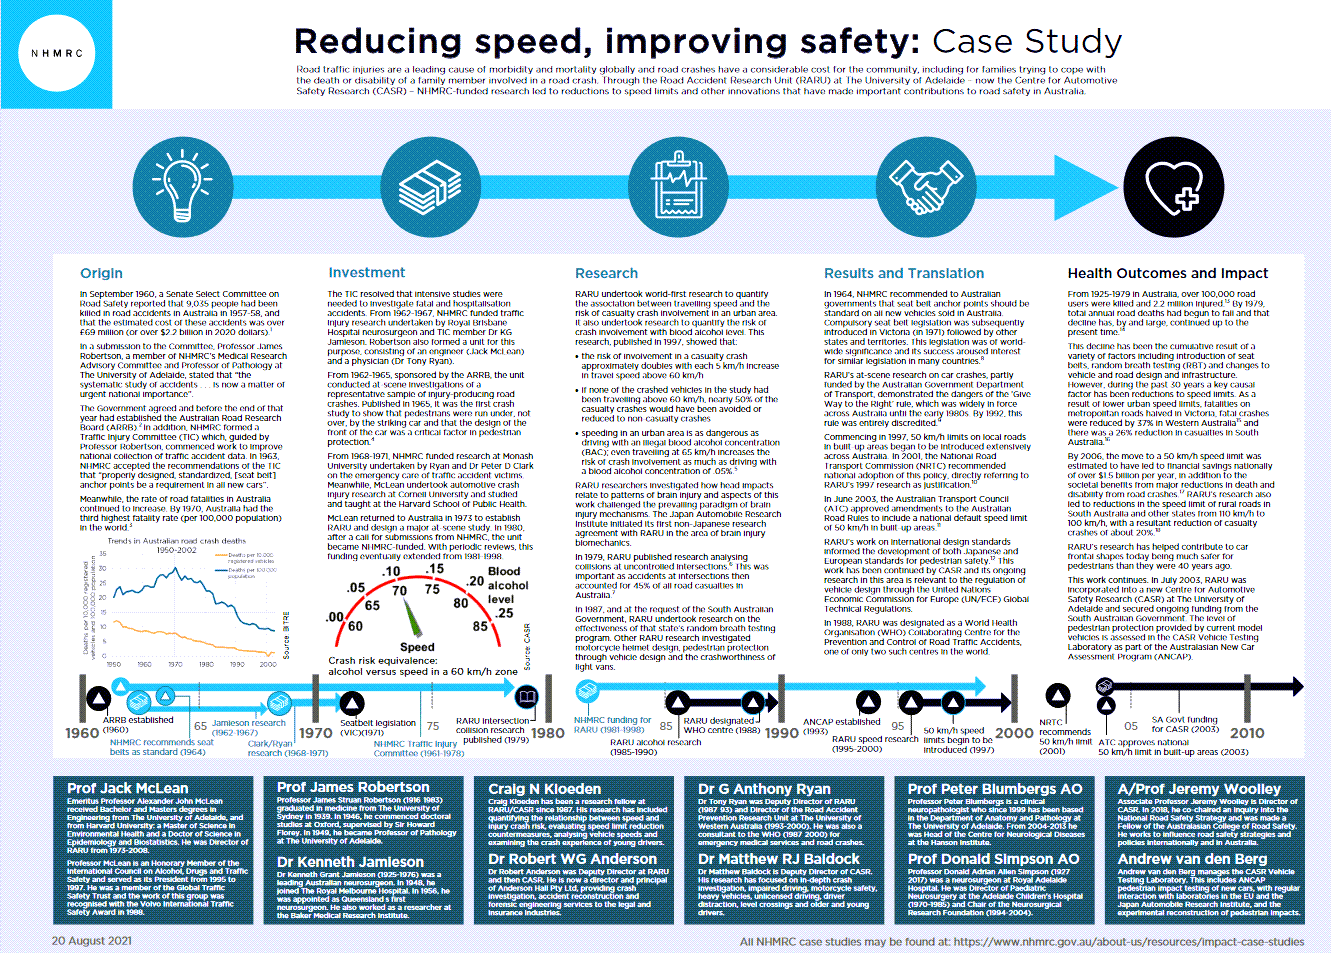 Reducing Speed Saving Lives.png